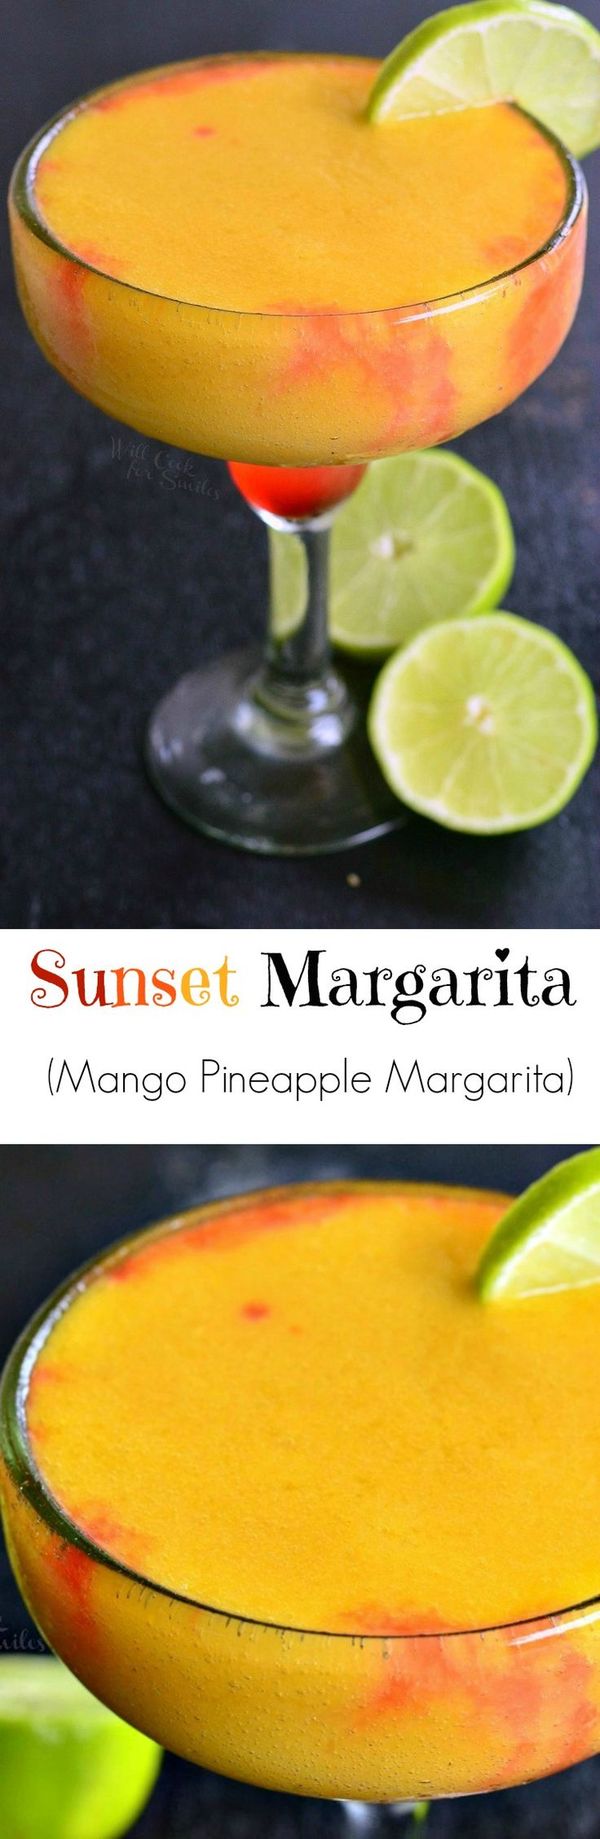 Sunset Margarita (Mango Pineapple Margarita